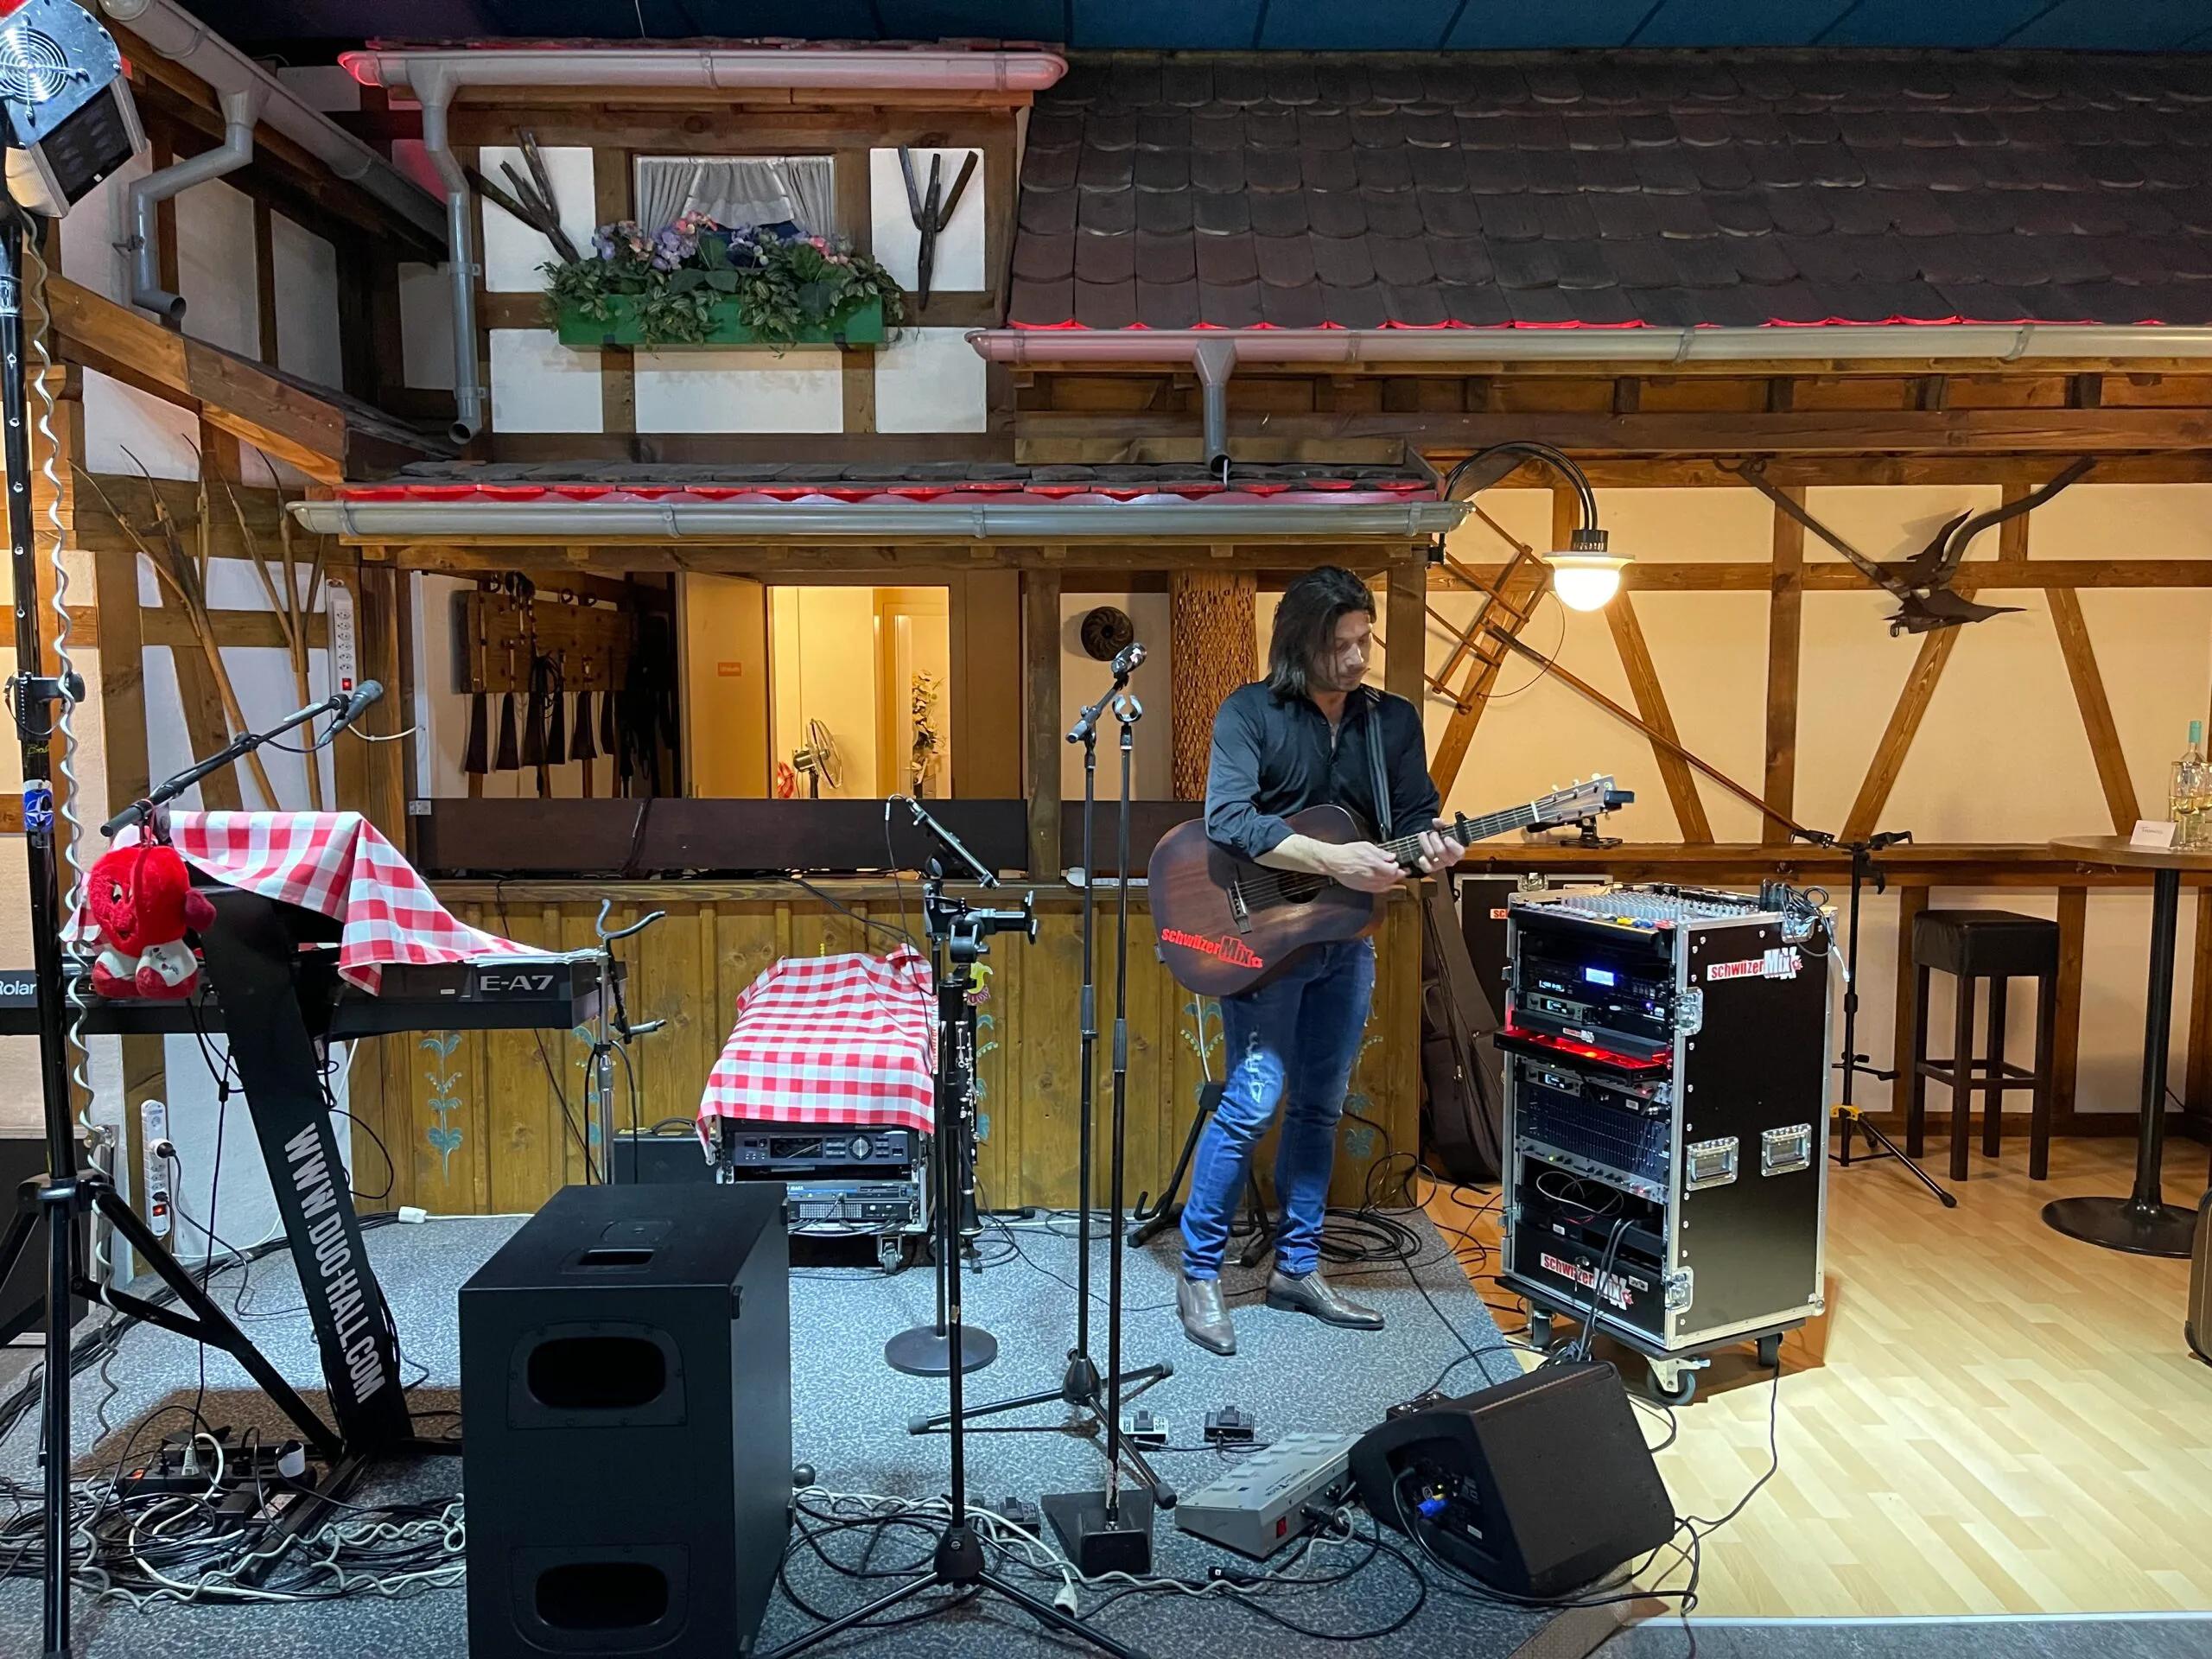 Tanzstadl in Wallenwil